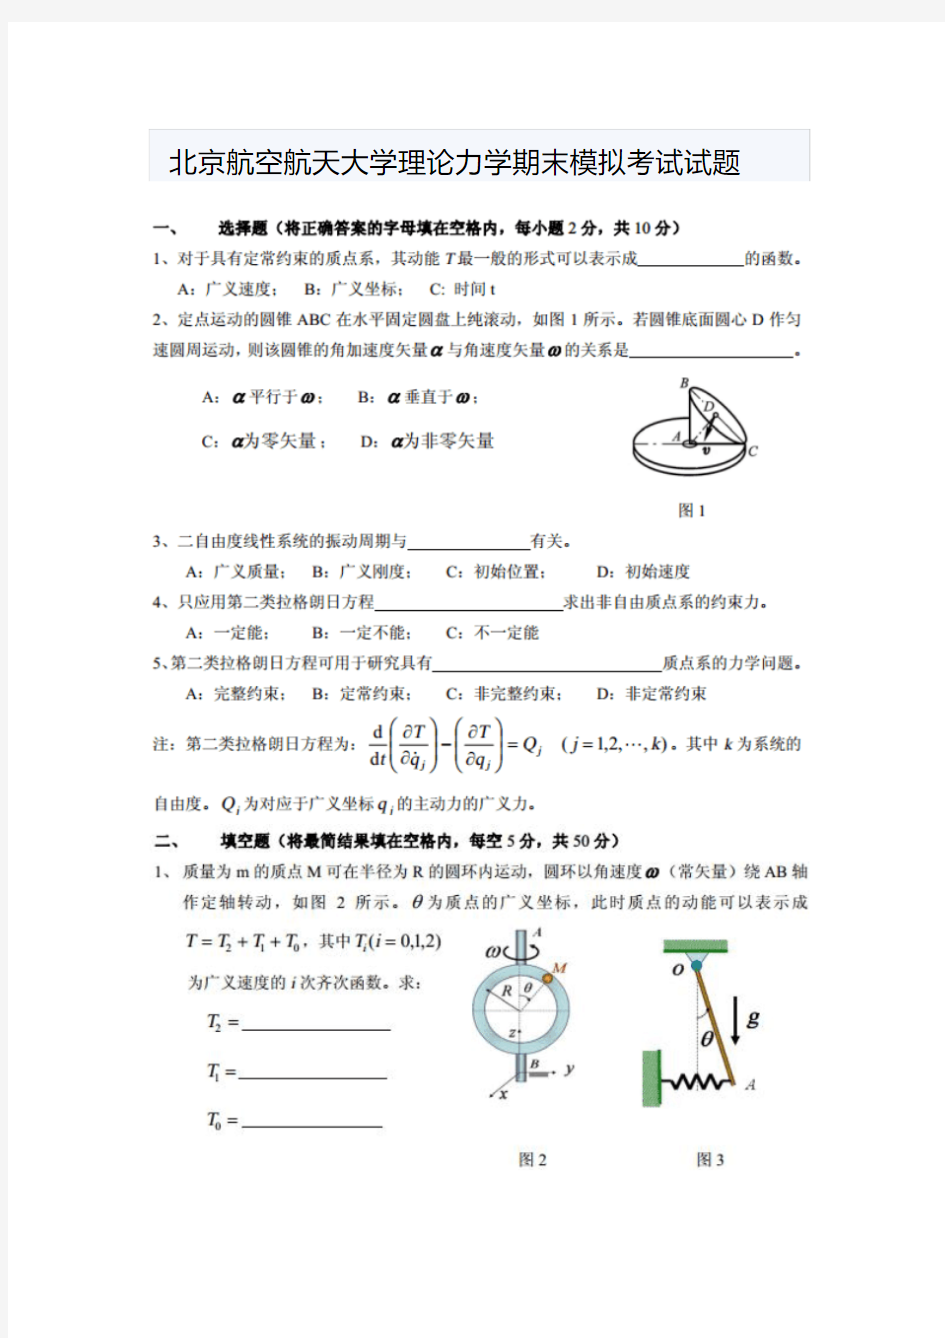 北京航空航天大学理论力学期末模拟考试试题